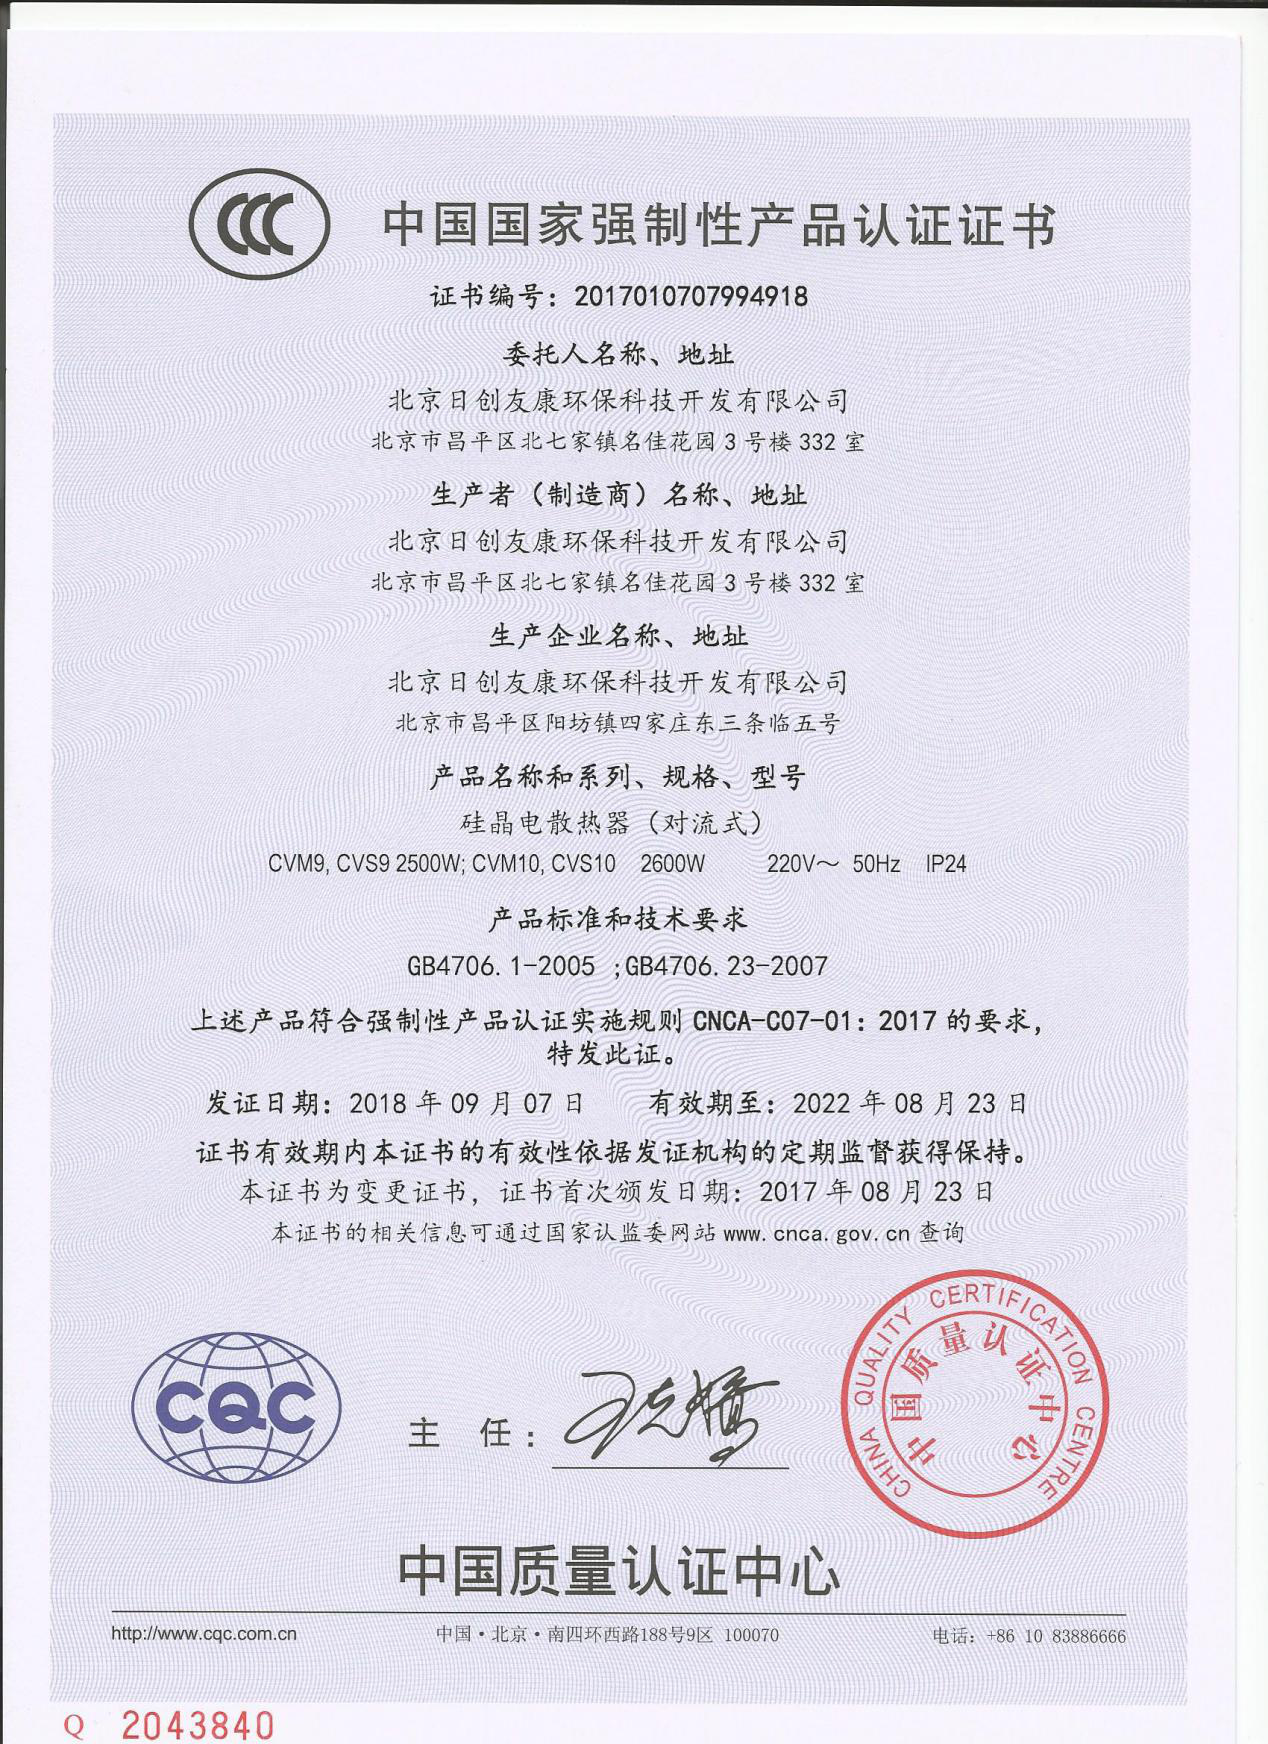 硅晶电暖器CCC证书-1